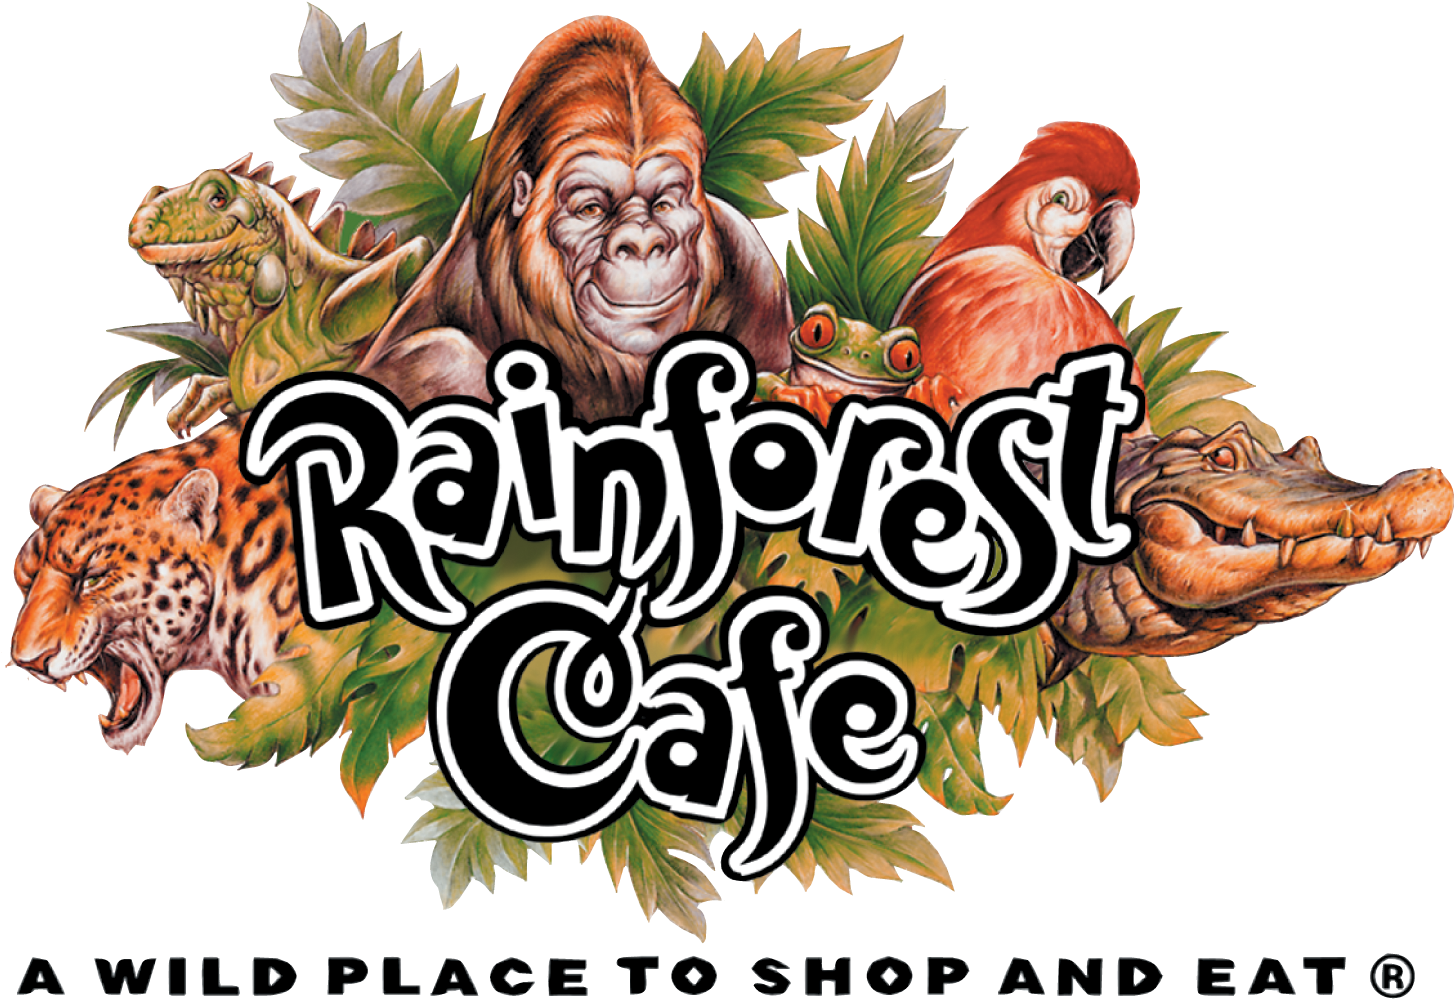 The Rainforest Cafe - Rainforest Cafe Dubai Menu (1500x1048)